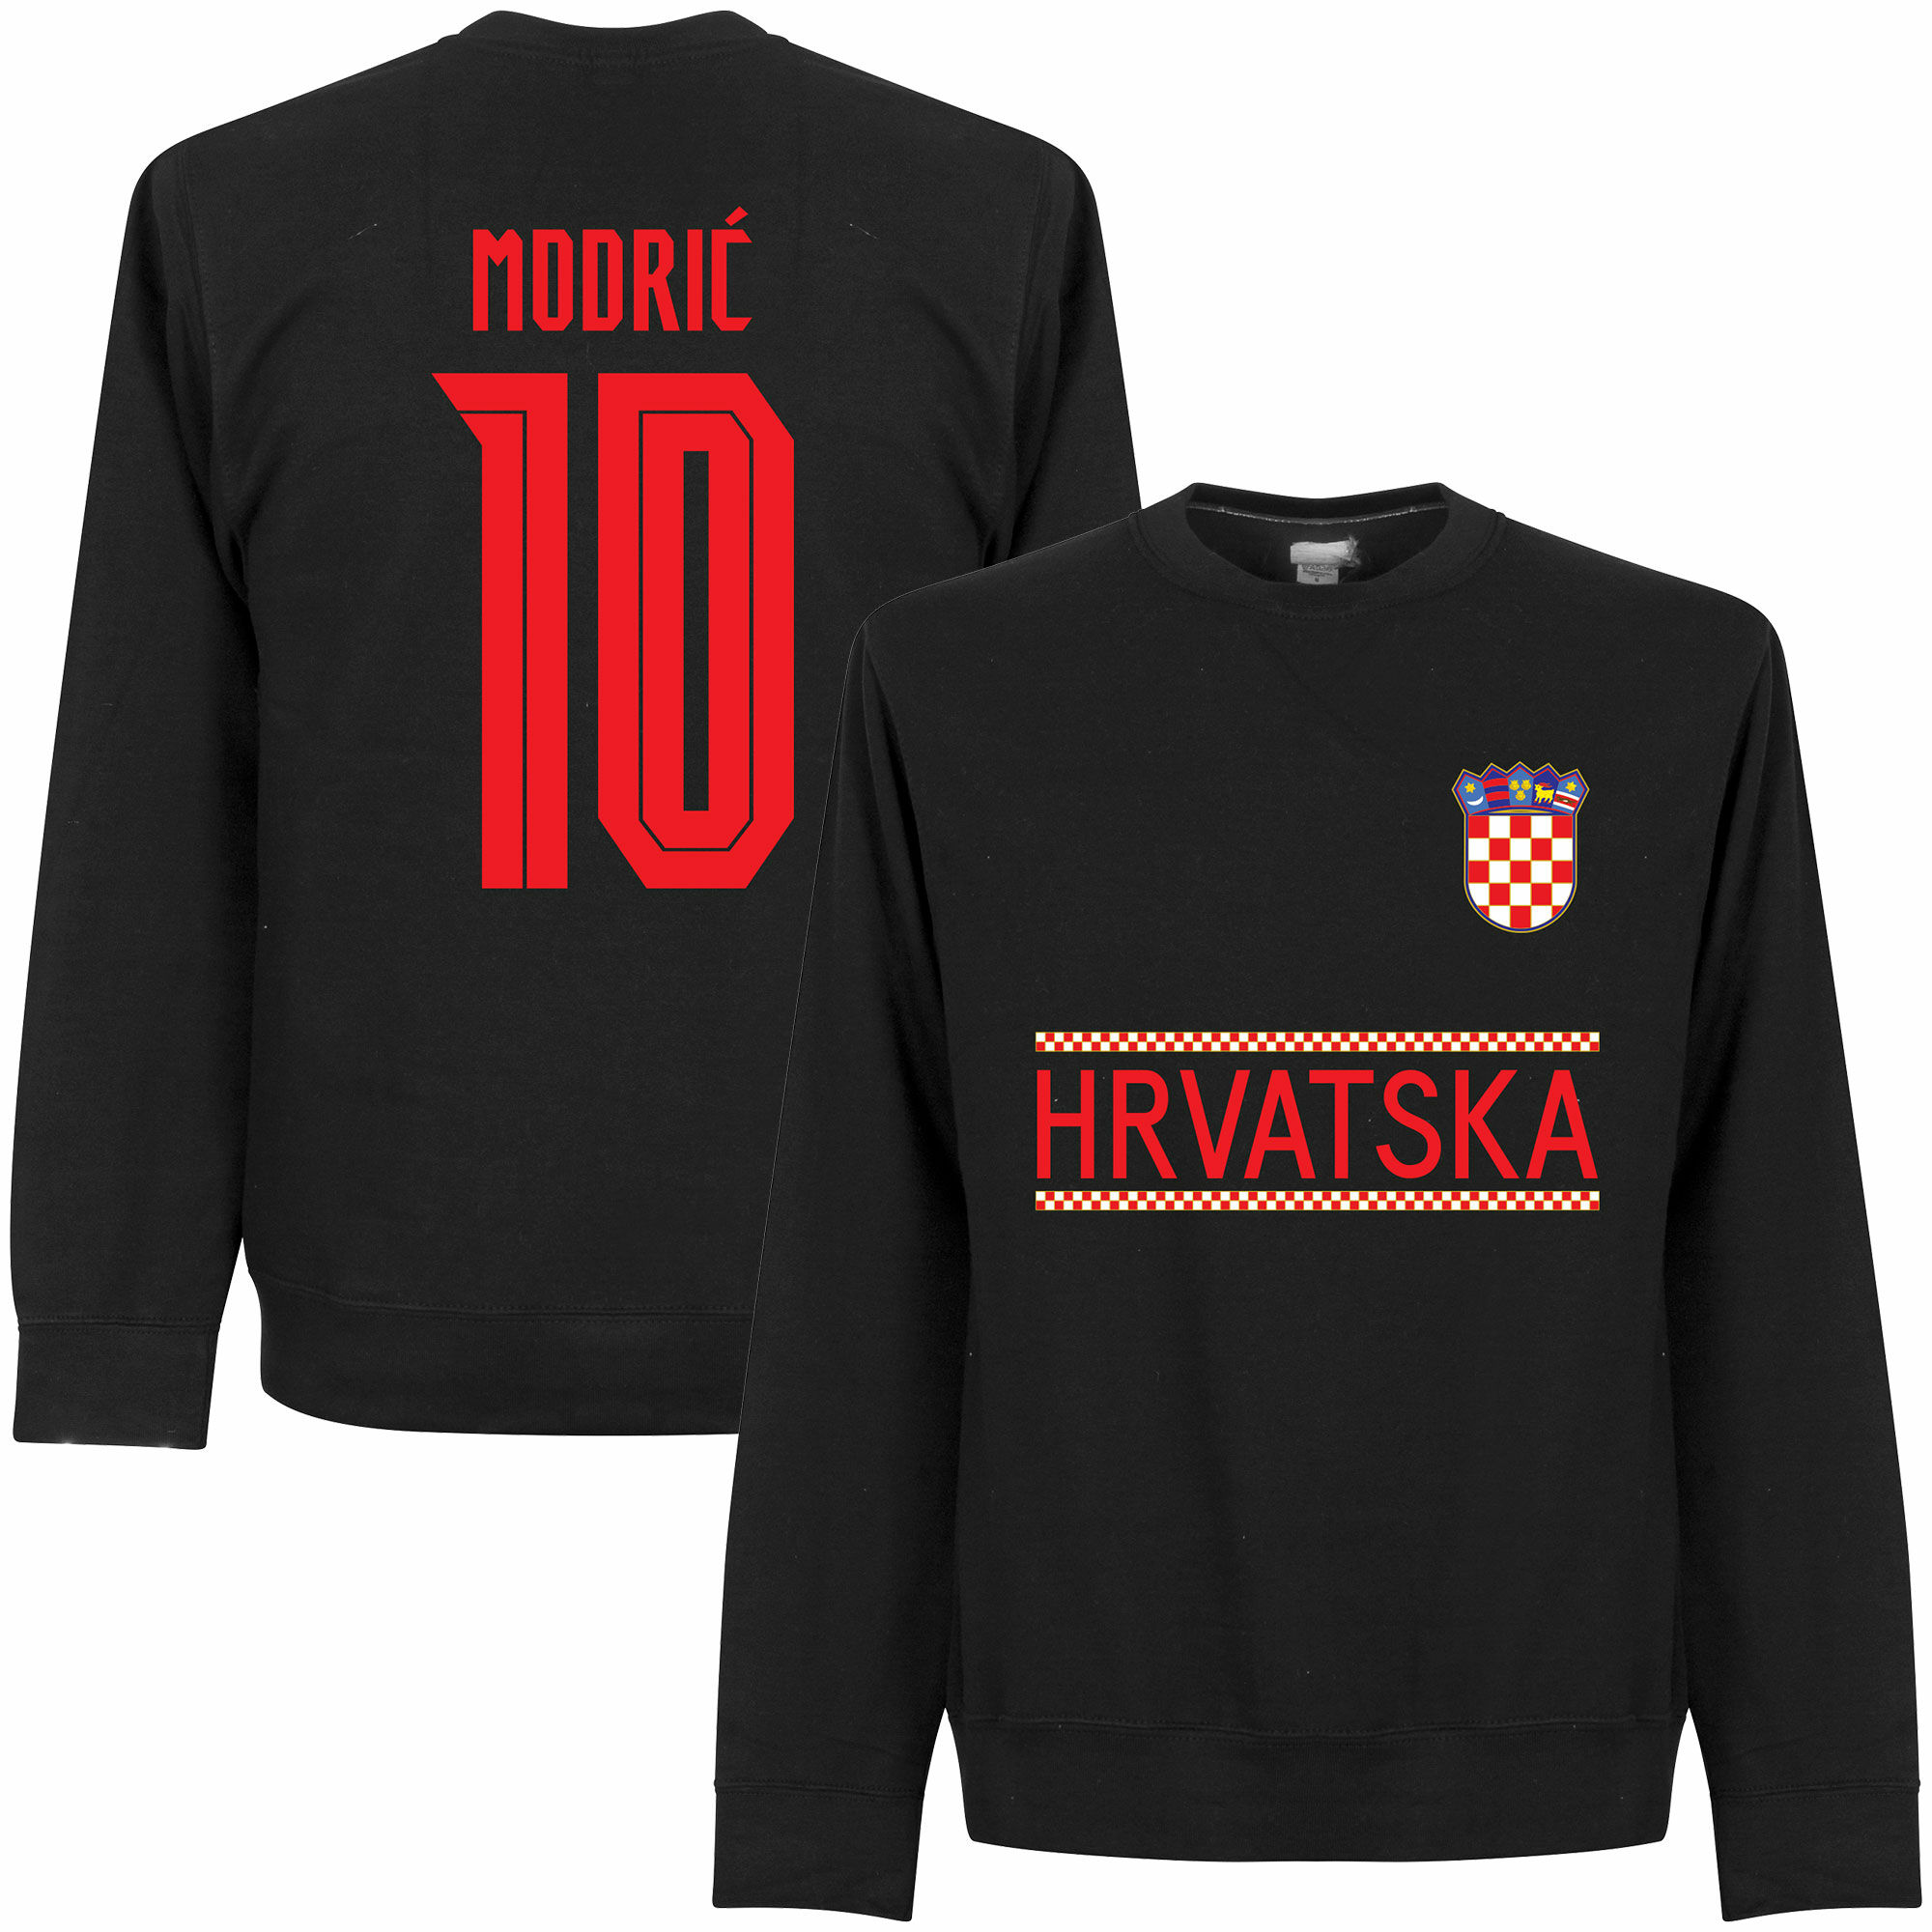 Chorvatsko - Mikina - černá, Luka Modrić, číslo 10